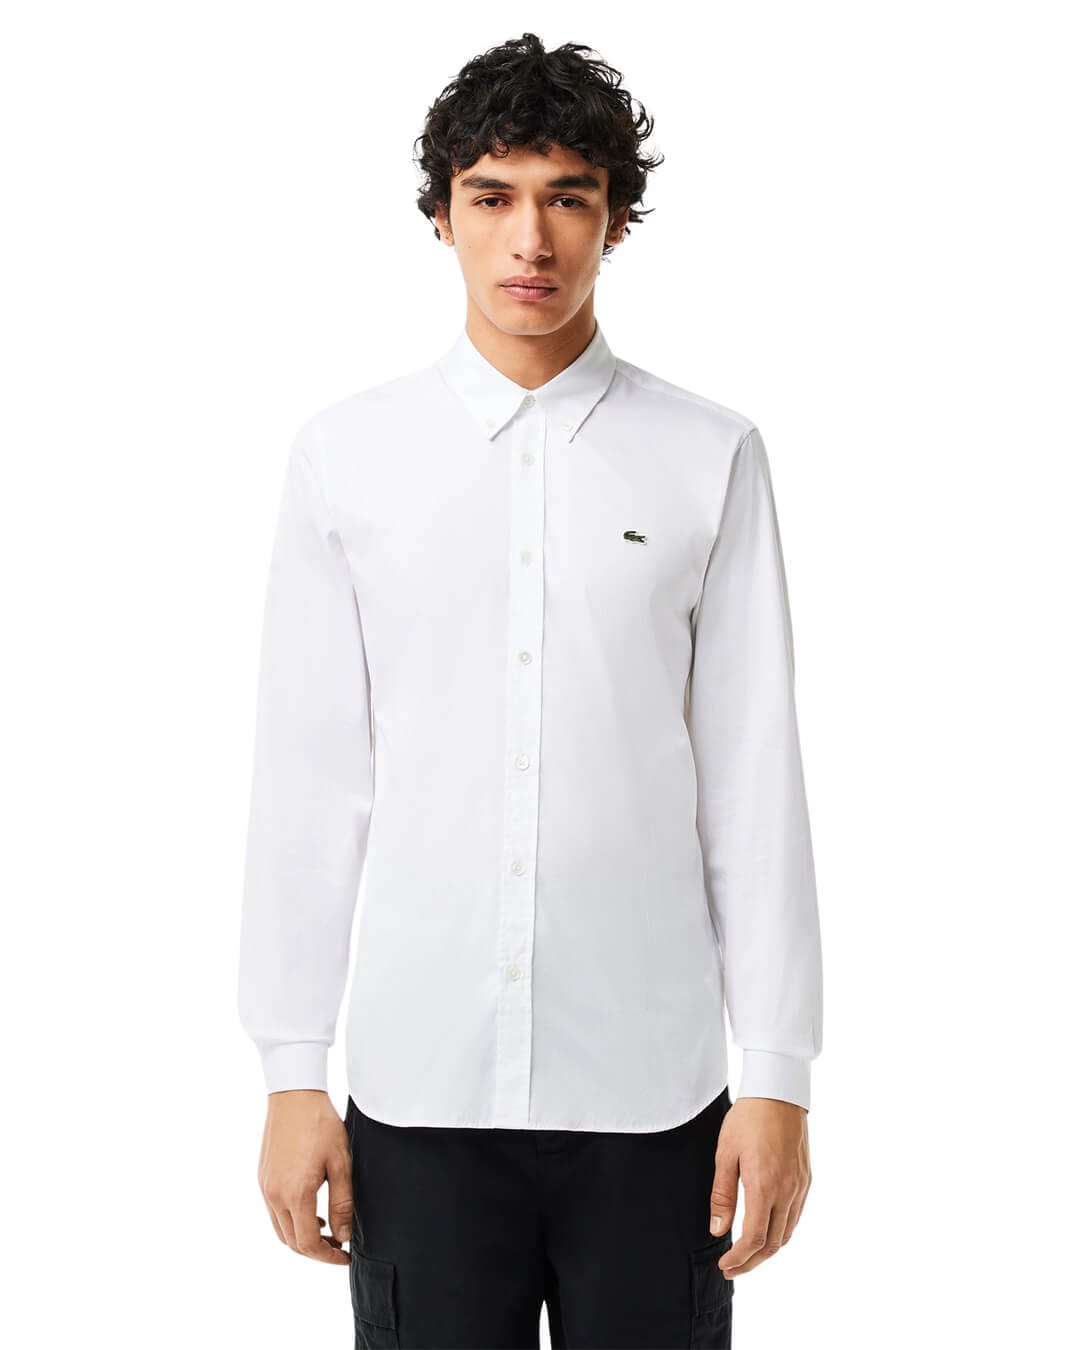 Lacoste Shirts Lacoste Mens White Slim Fit Premium Cotton Shirt